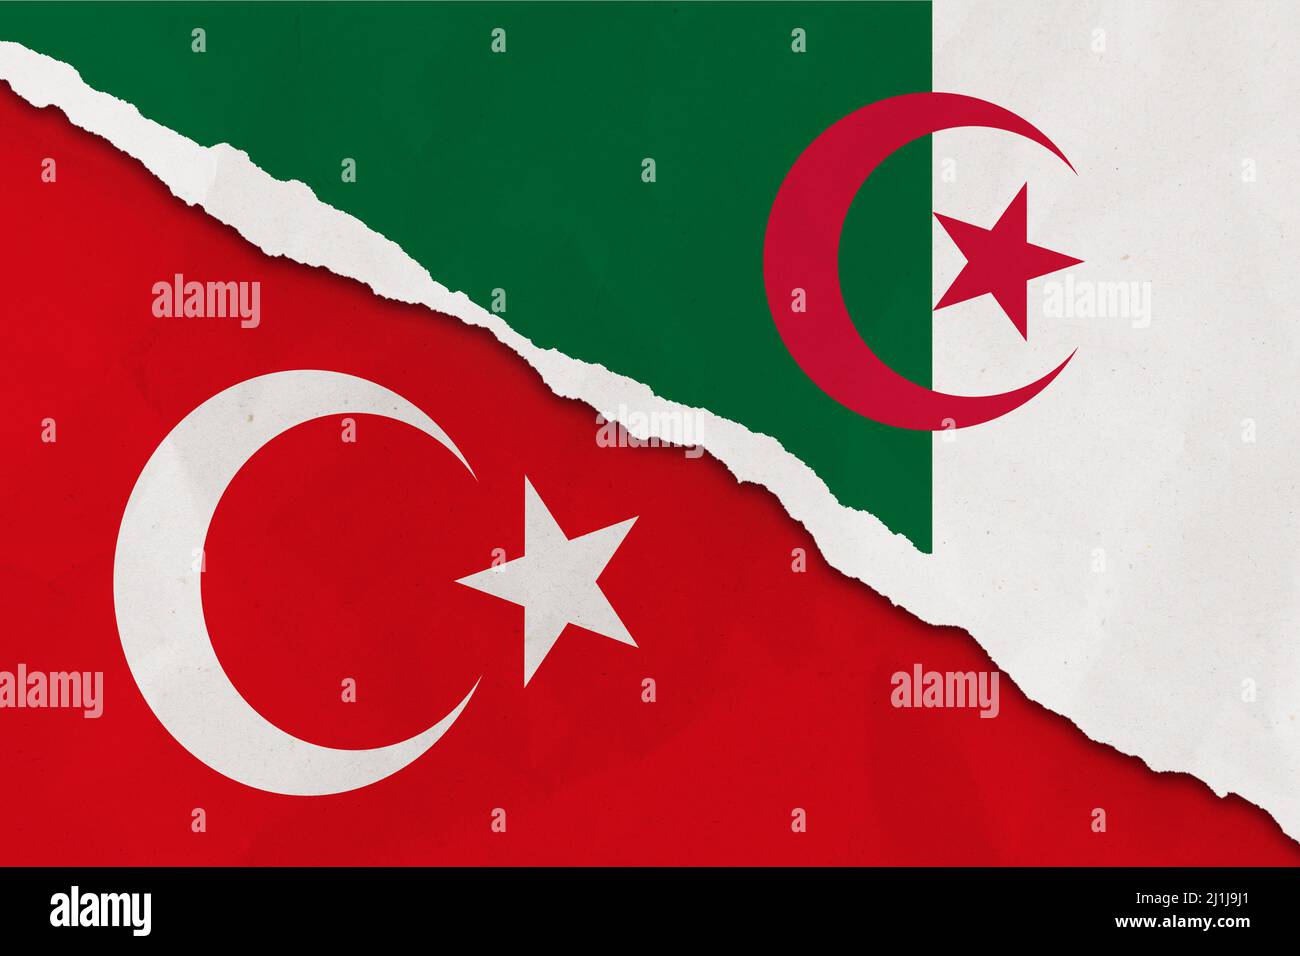 Le drapeau de l'Algérie et de la Turquie a déchiré le papier grince fond. Résumé Algérie et Turquie économie, politique conflits, concept de guerre texture fond Banque D'Images